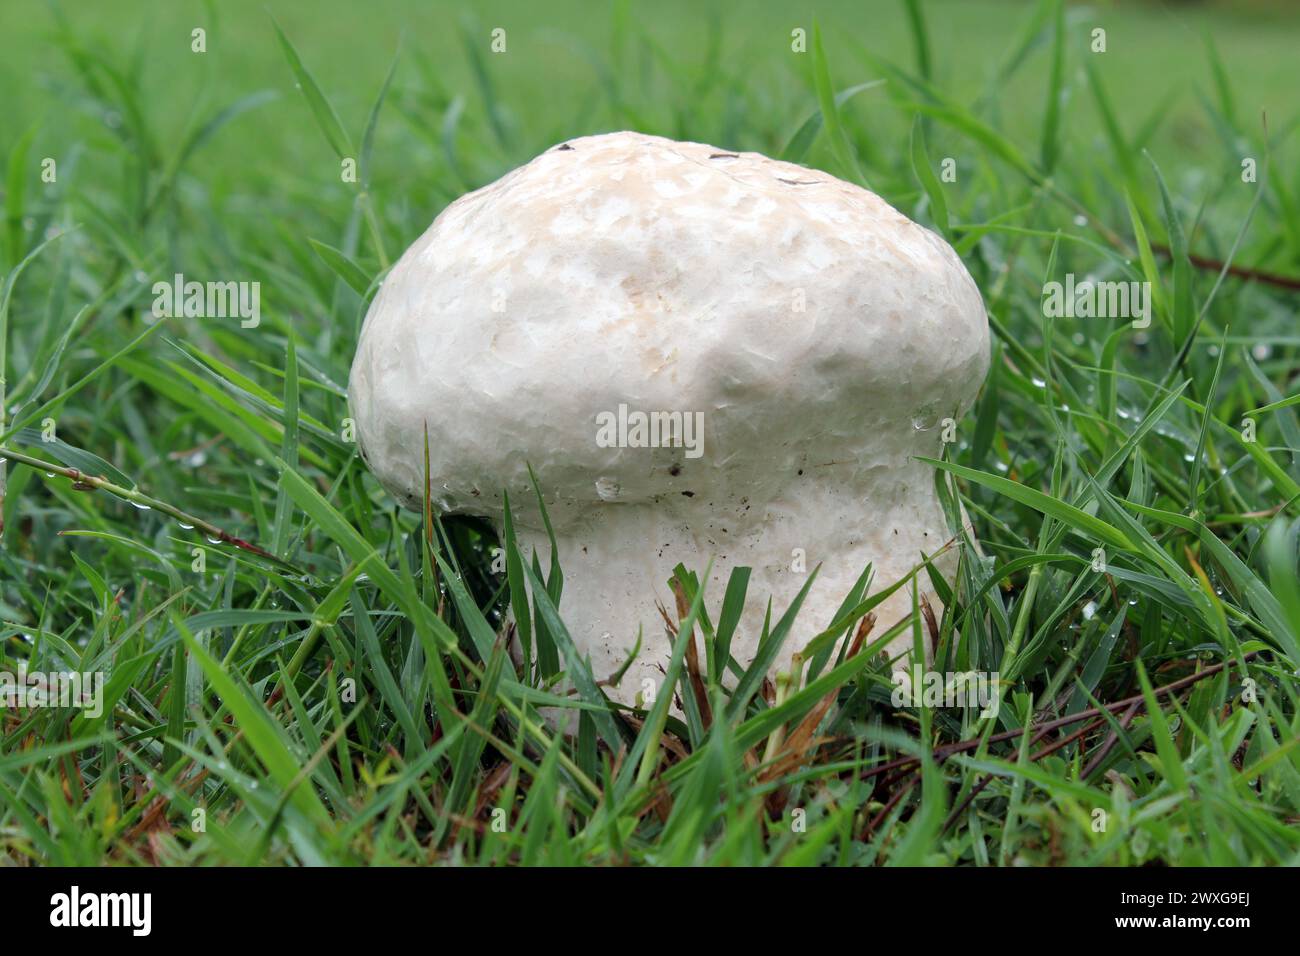 Funghi polpette in erba verde dopo la pioggia Foto Stock